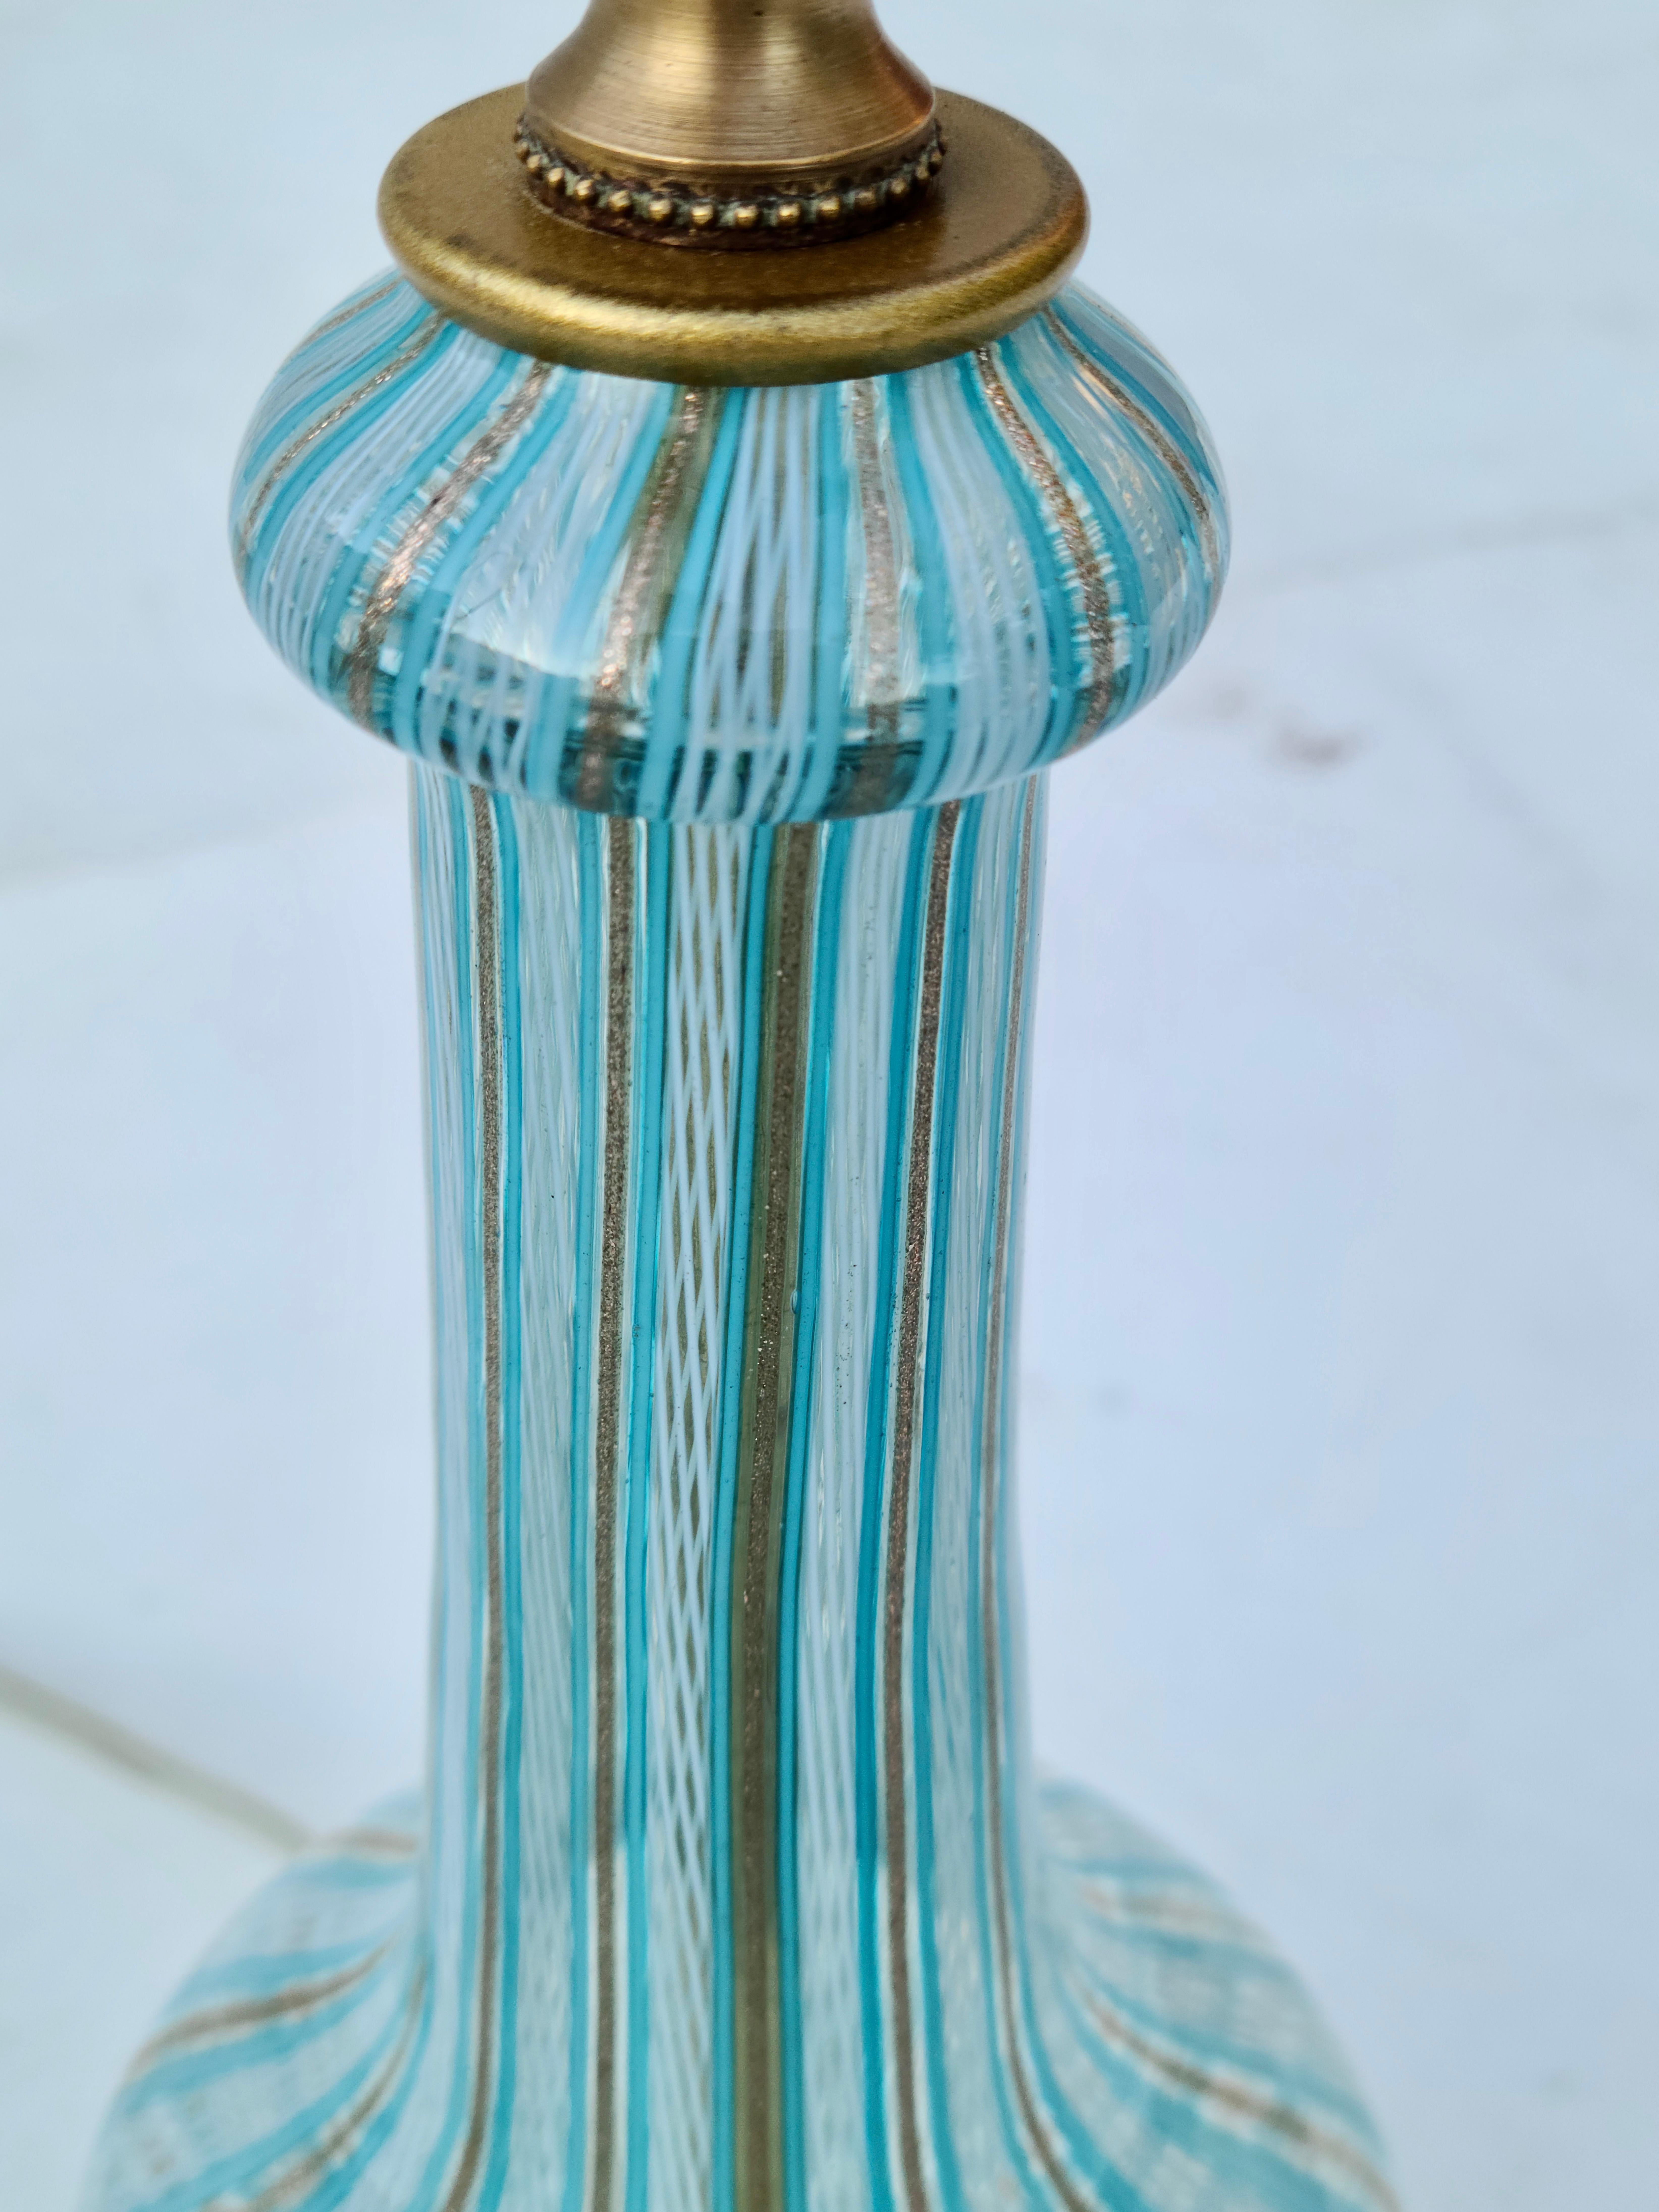 Paire de bases de lampes en verre de Murano.

Filaments d'or et de blanc tissés.